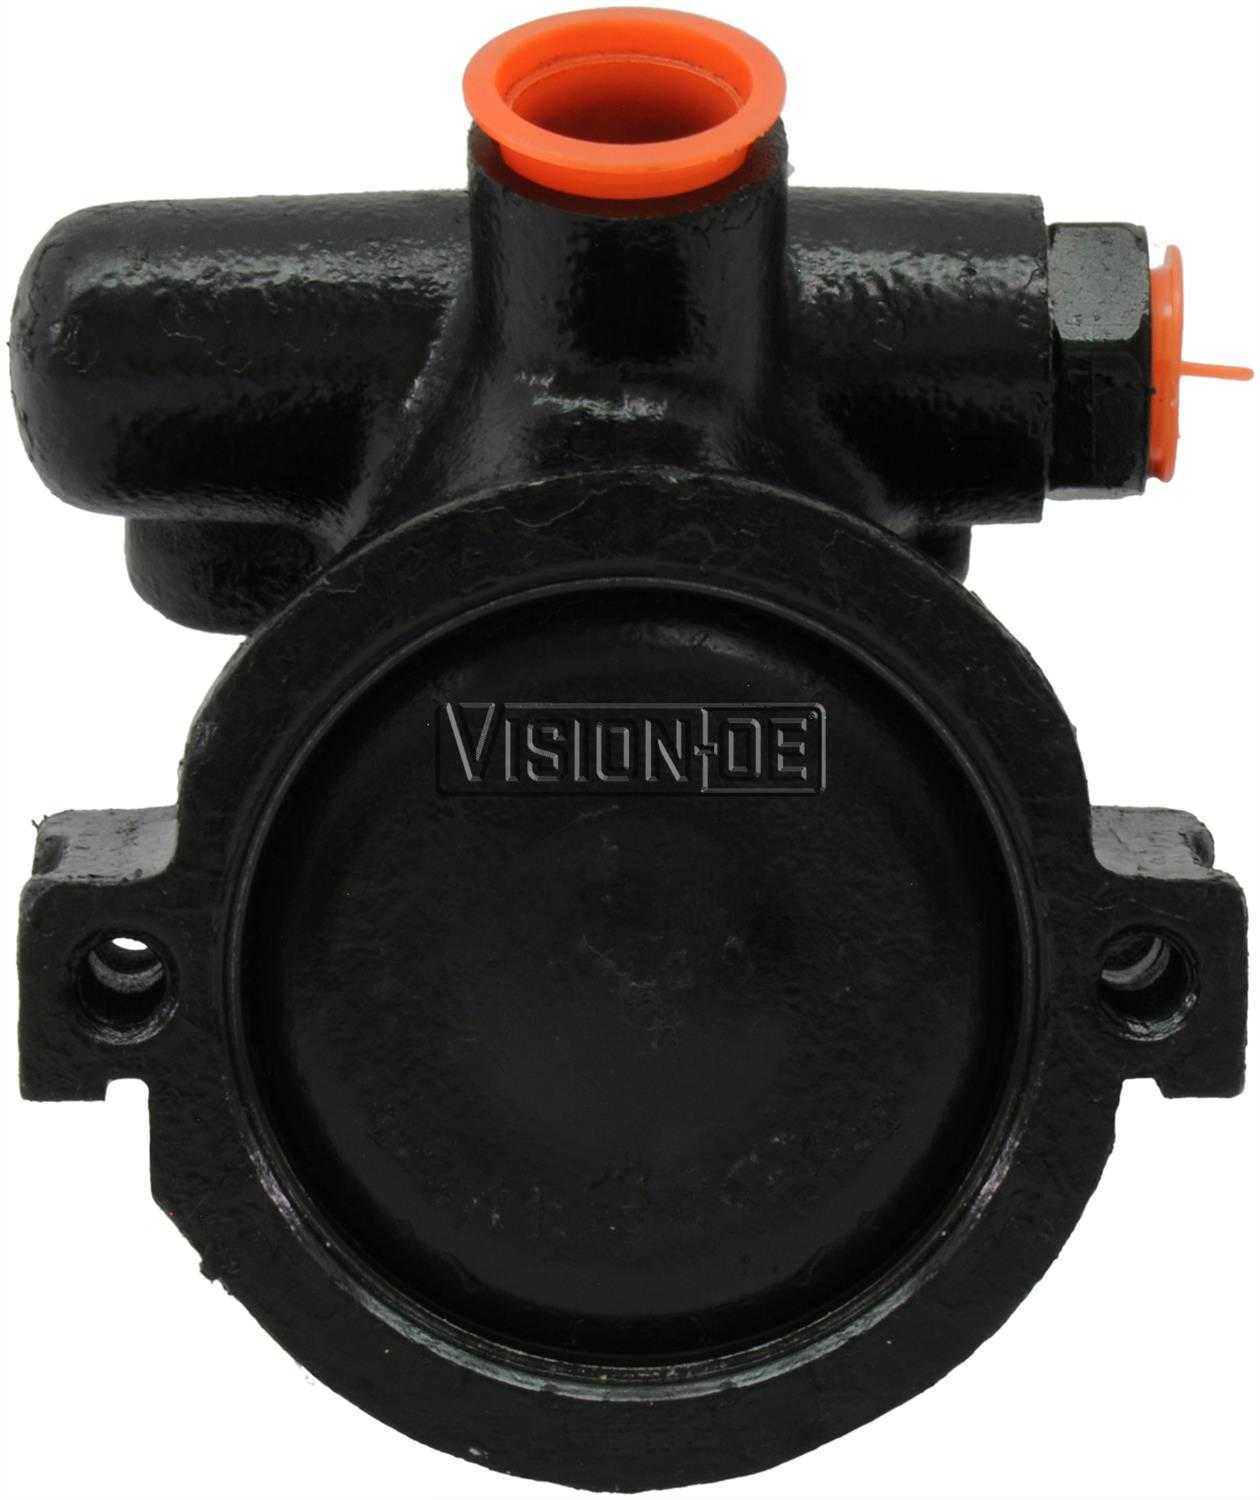 VISION-OE - Reman Power Steering Pump - VOE 734-0137